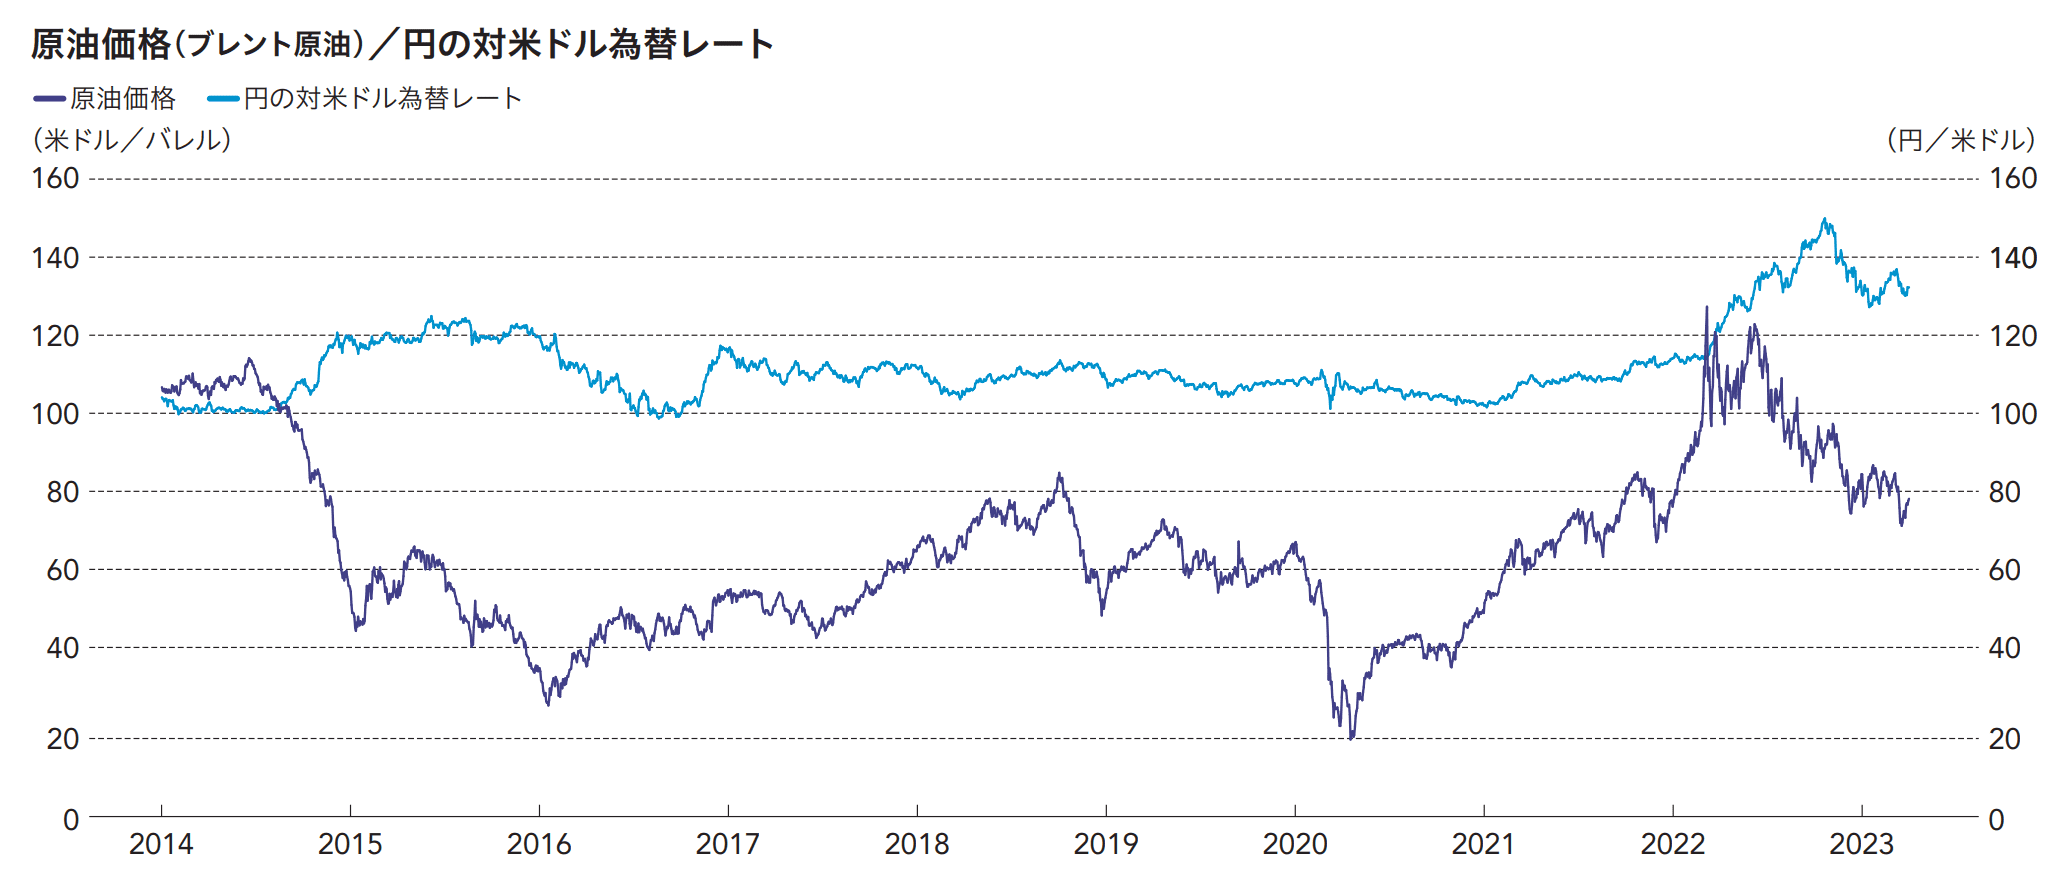 原油価格と為替レート